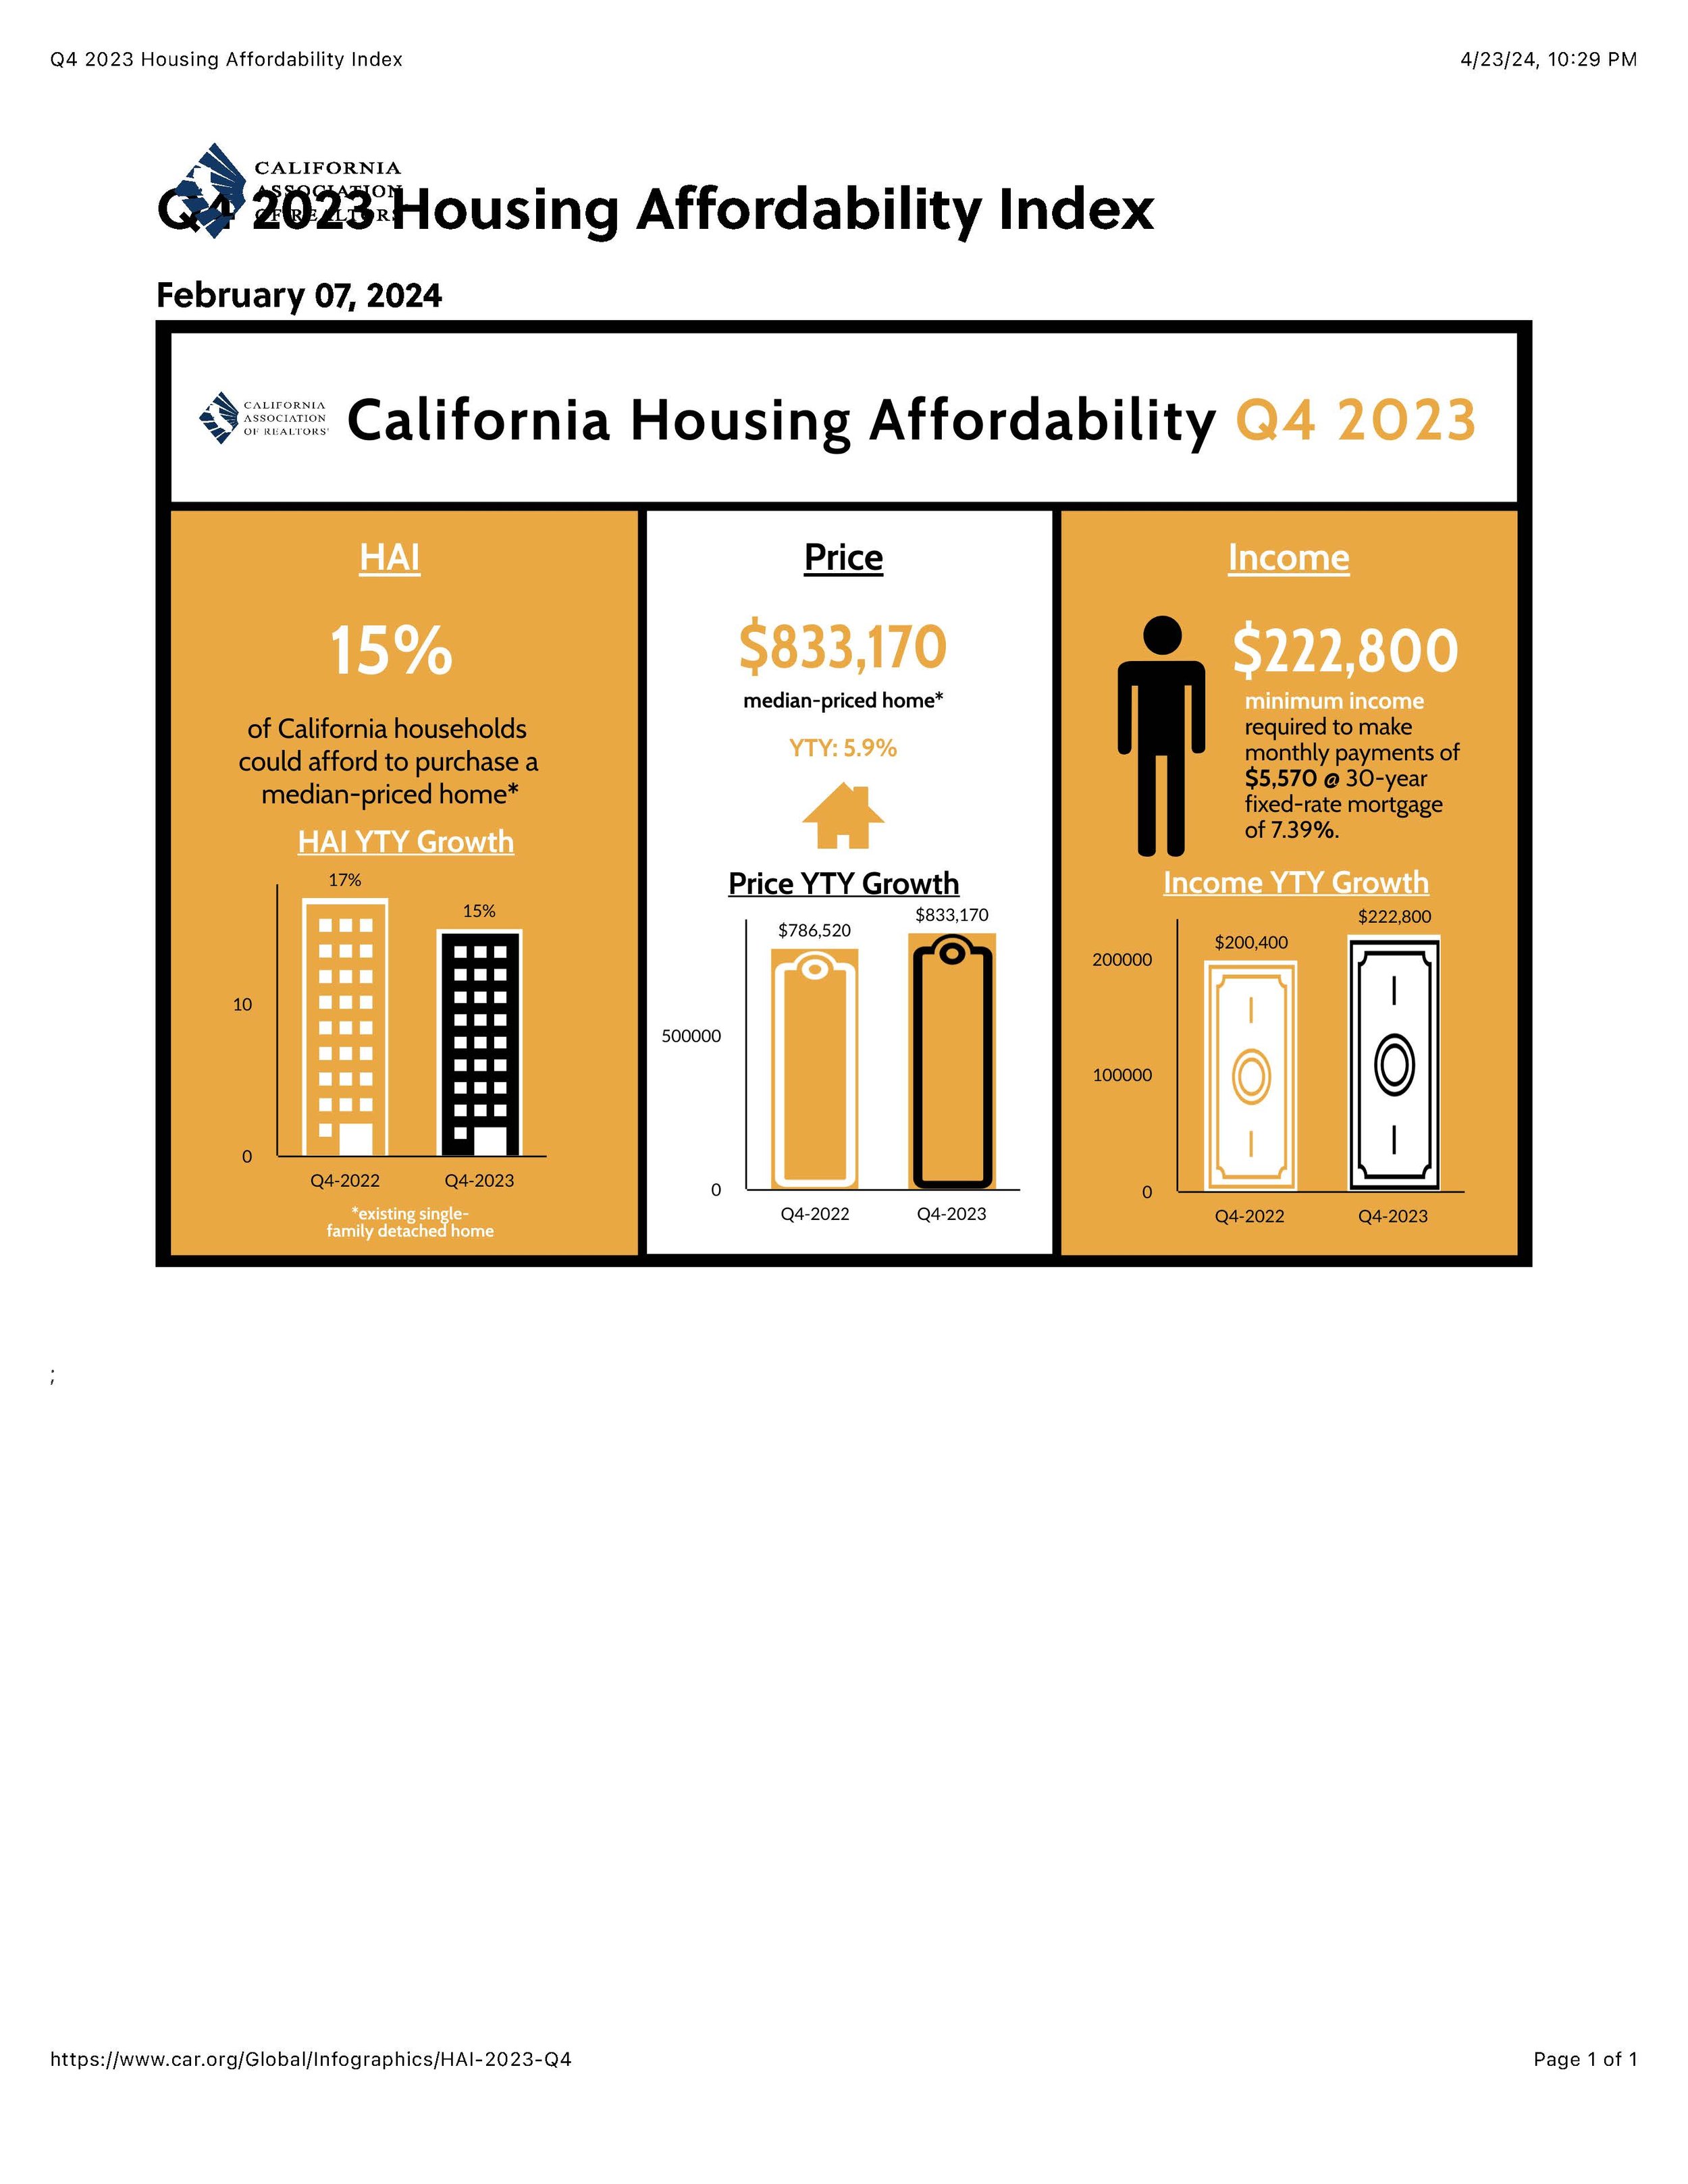 Q4 2023 Housing Affordability Index.jpg